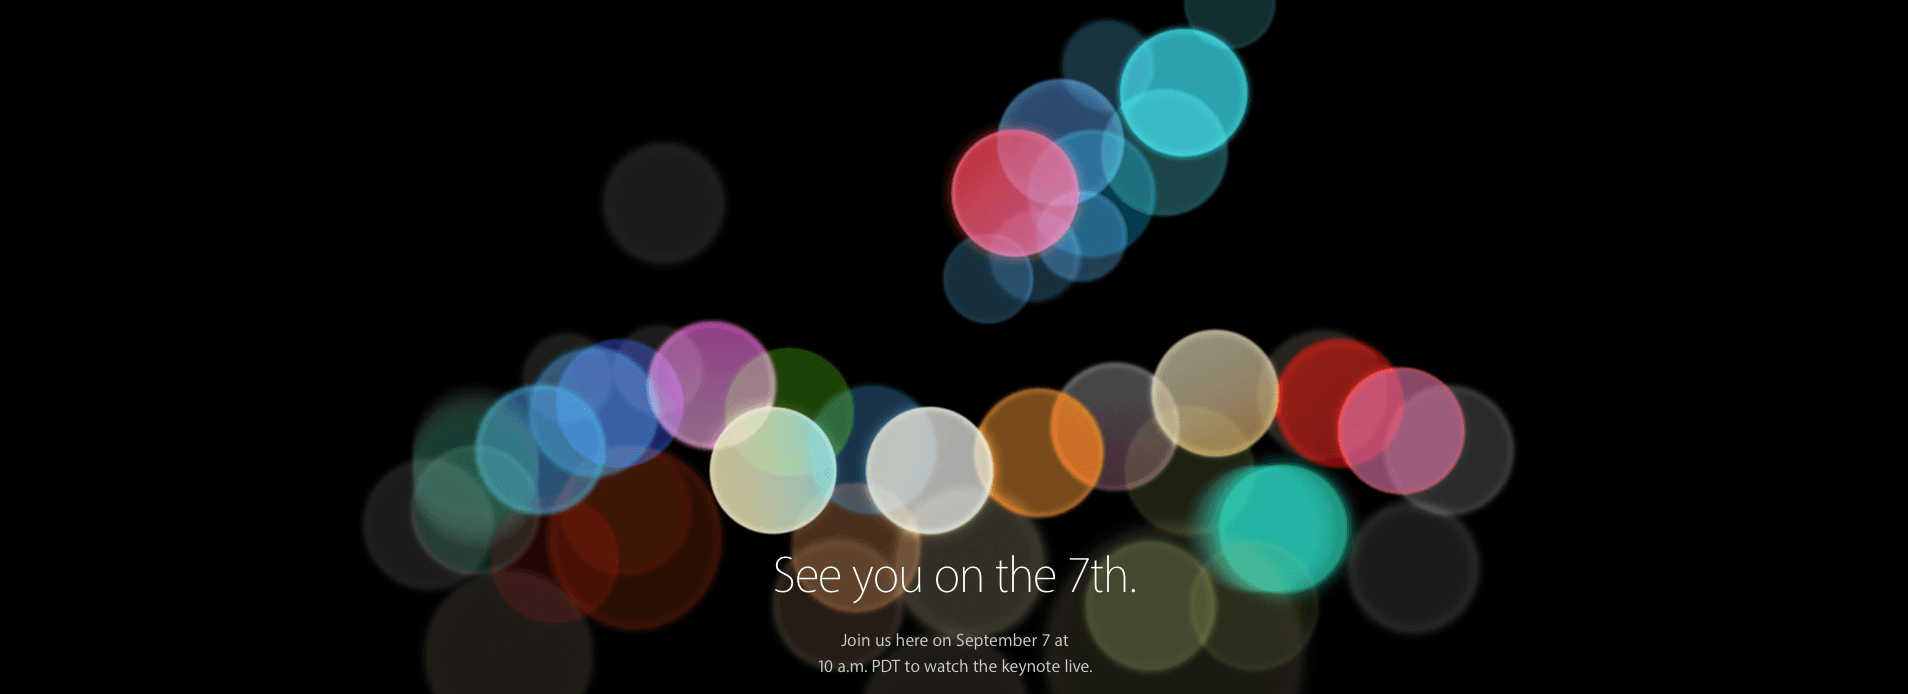 Презентация iPhone 7 состоится 7 сентября [Прямая трансляция]